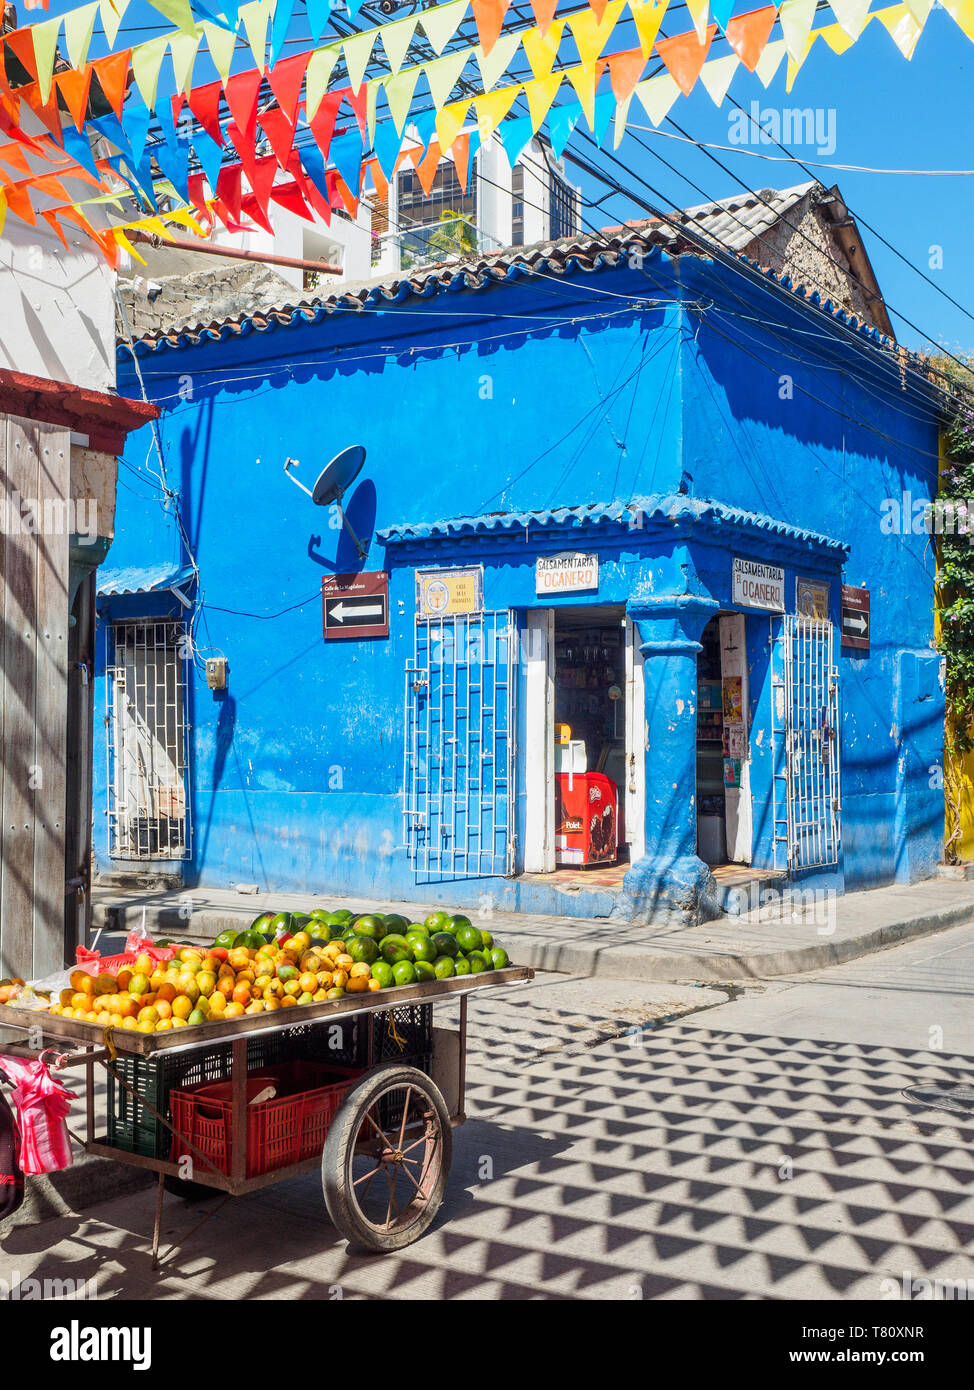 Coloridas banderas, edificio azul, y la cesta de frutas en la esquina de una calle en el barrio Getsemani, Cartagena, Colombia, Sur America Foto de stock